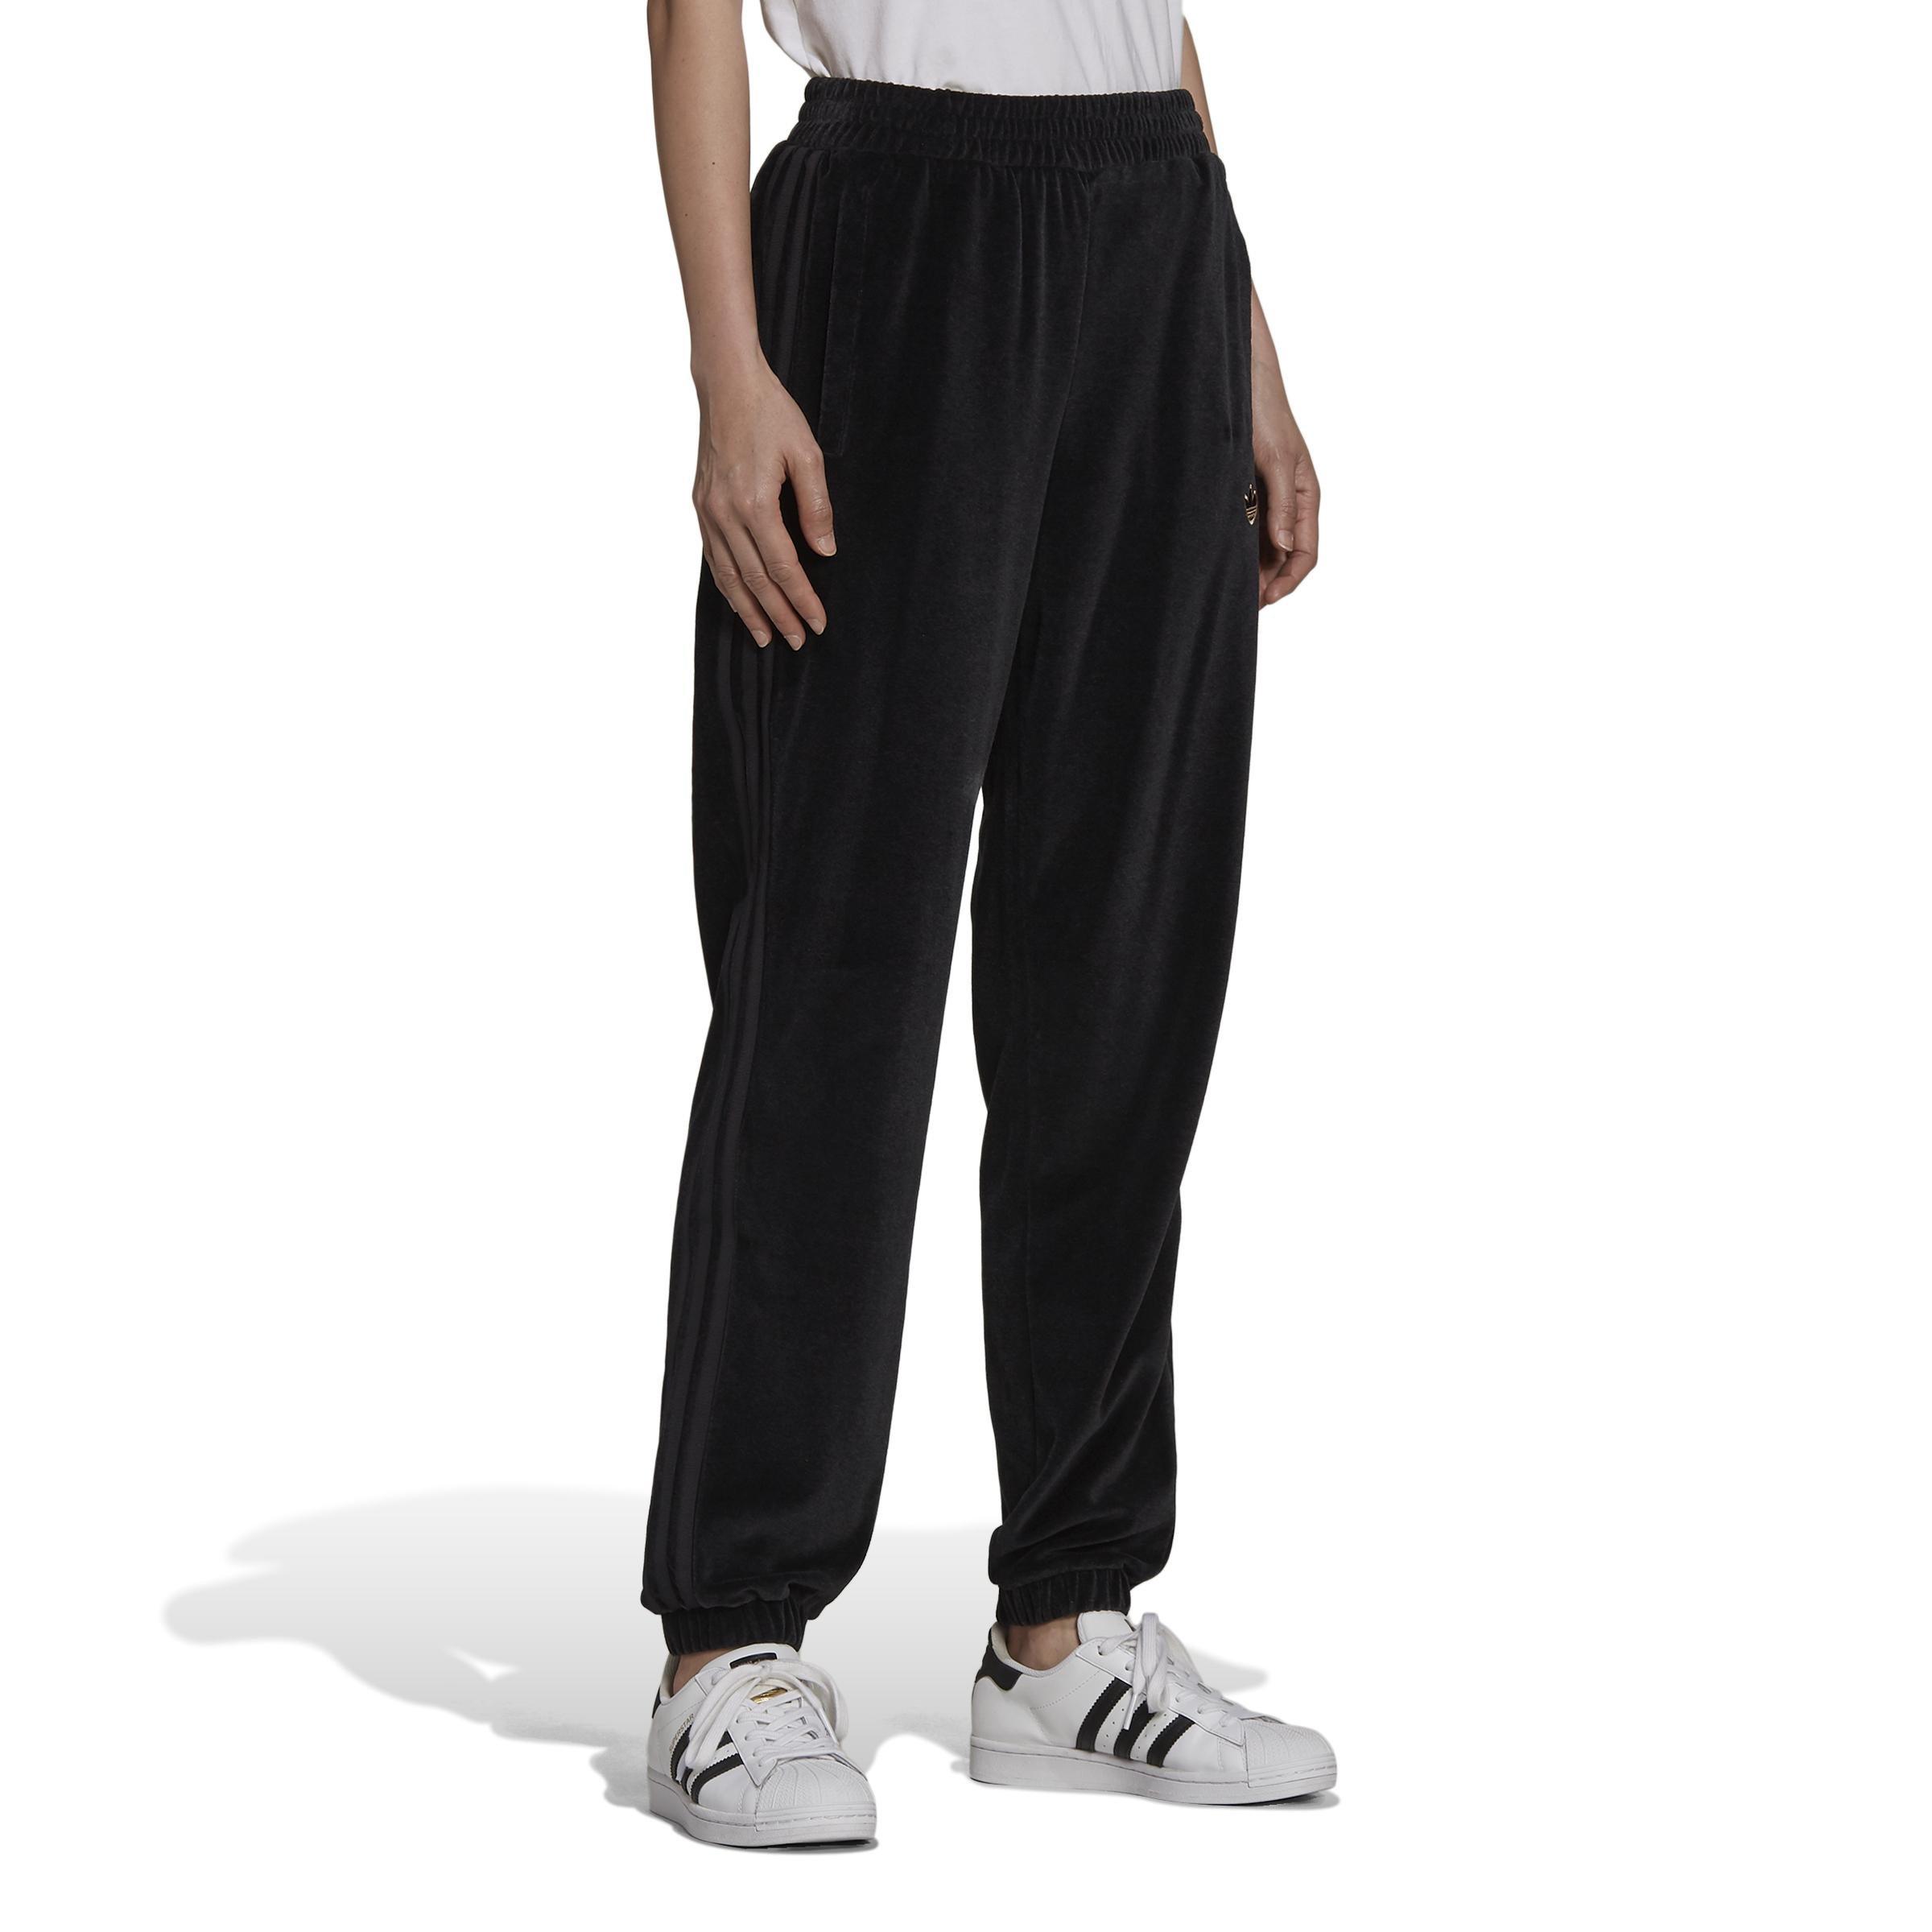 adidas Originals 'Cozy Comfort' Plus oversized cuffed sweatpants in black